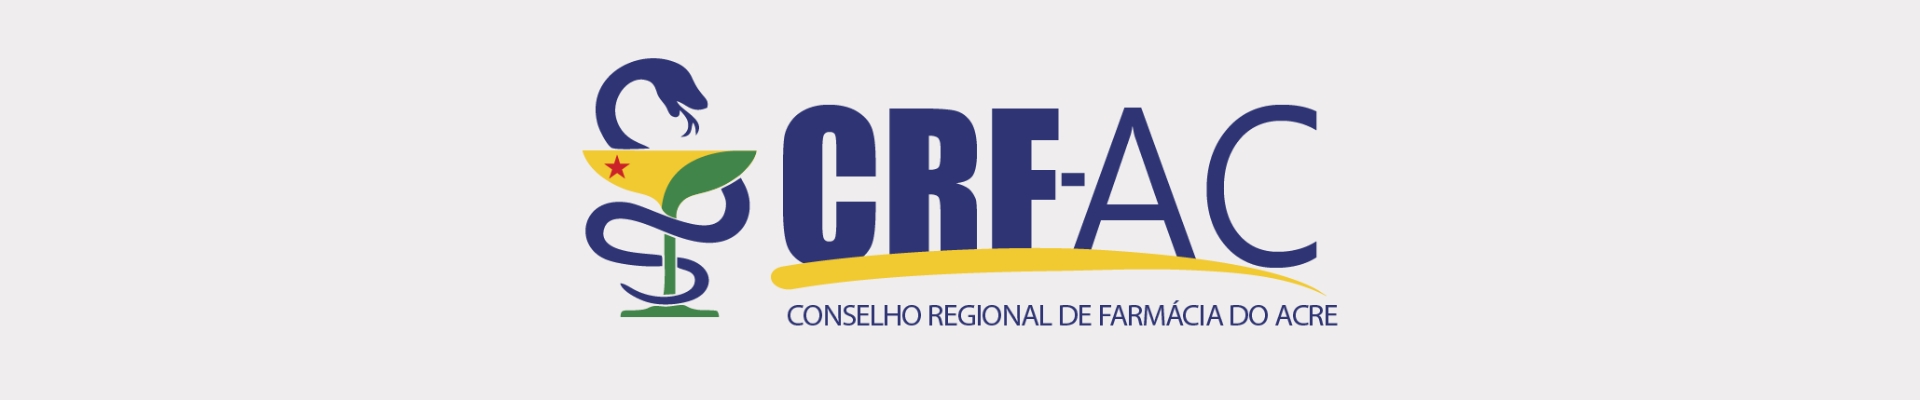 Conselho Regional de Farmácia do Acre - CRF/AC